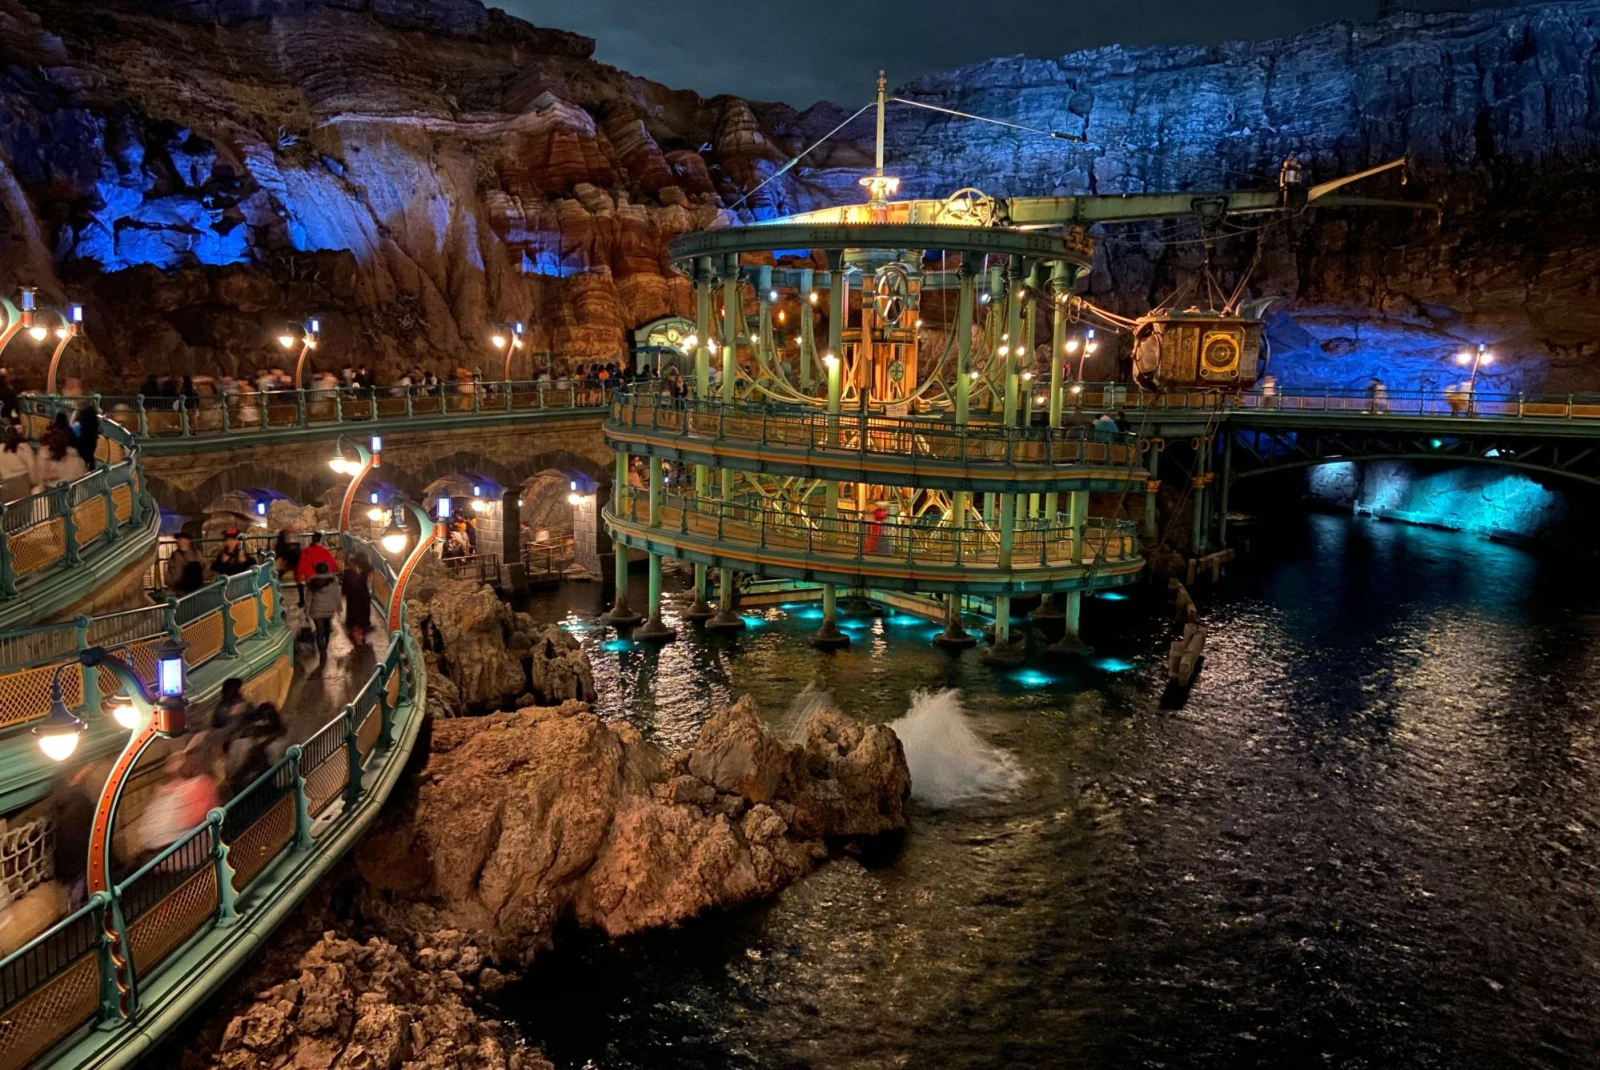 DisneySea amusement park at night